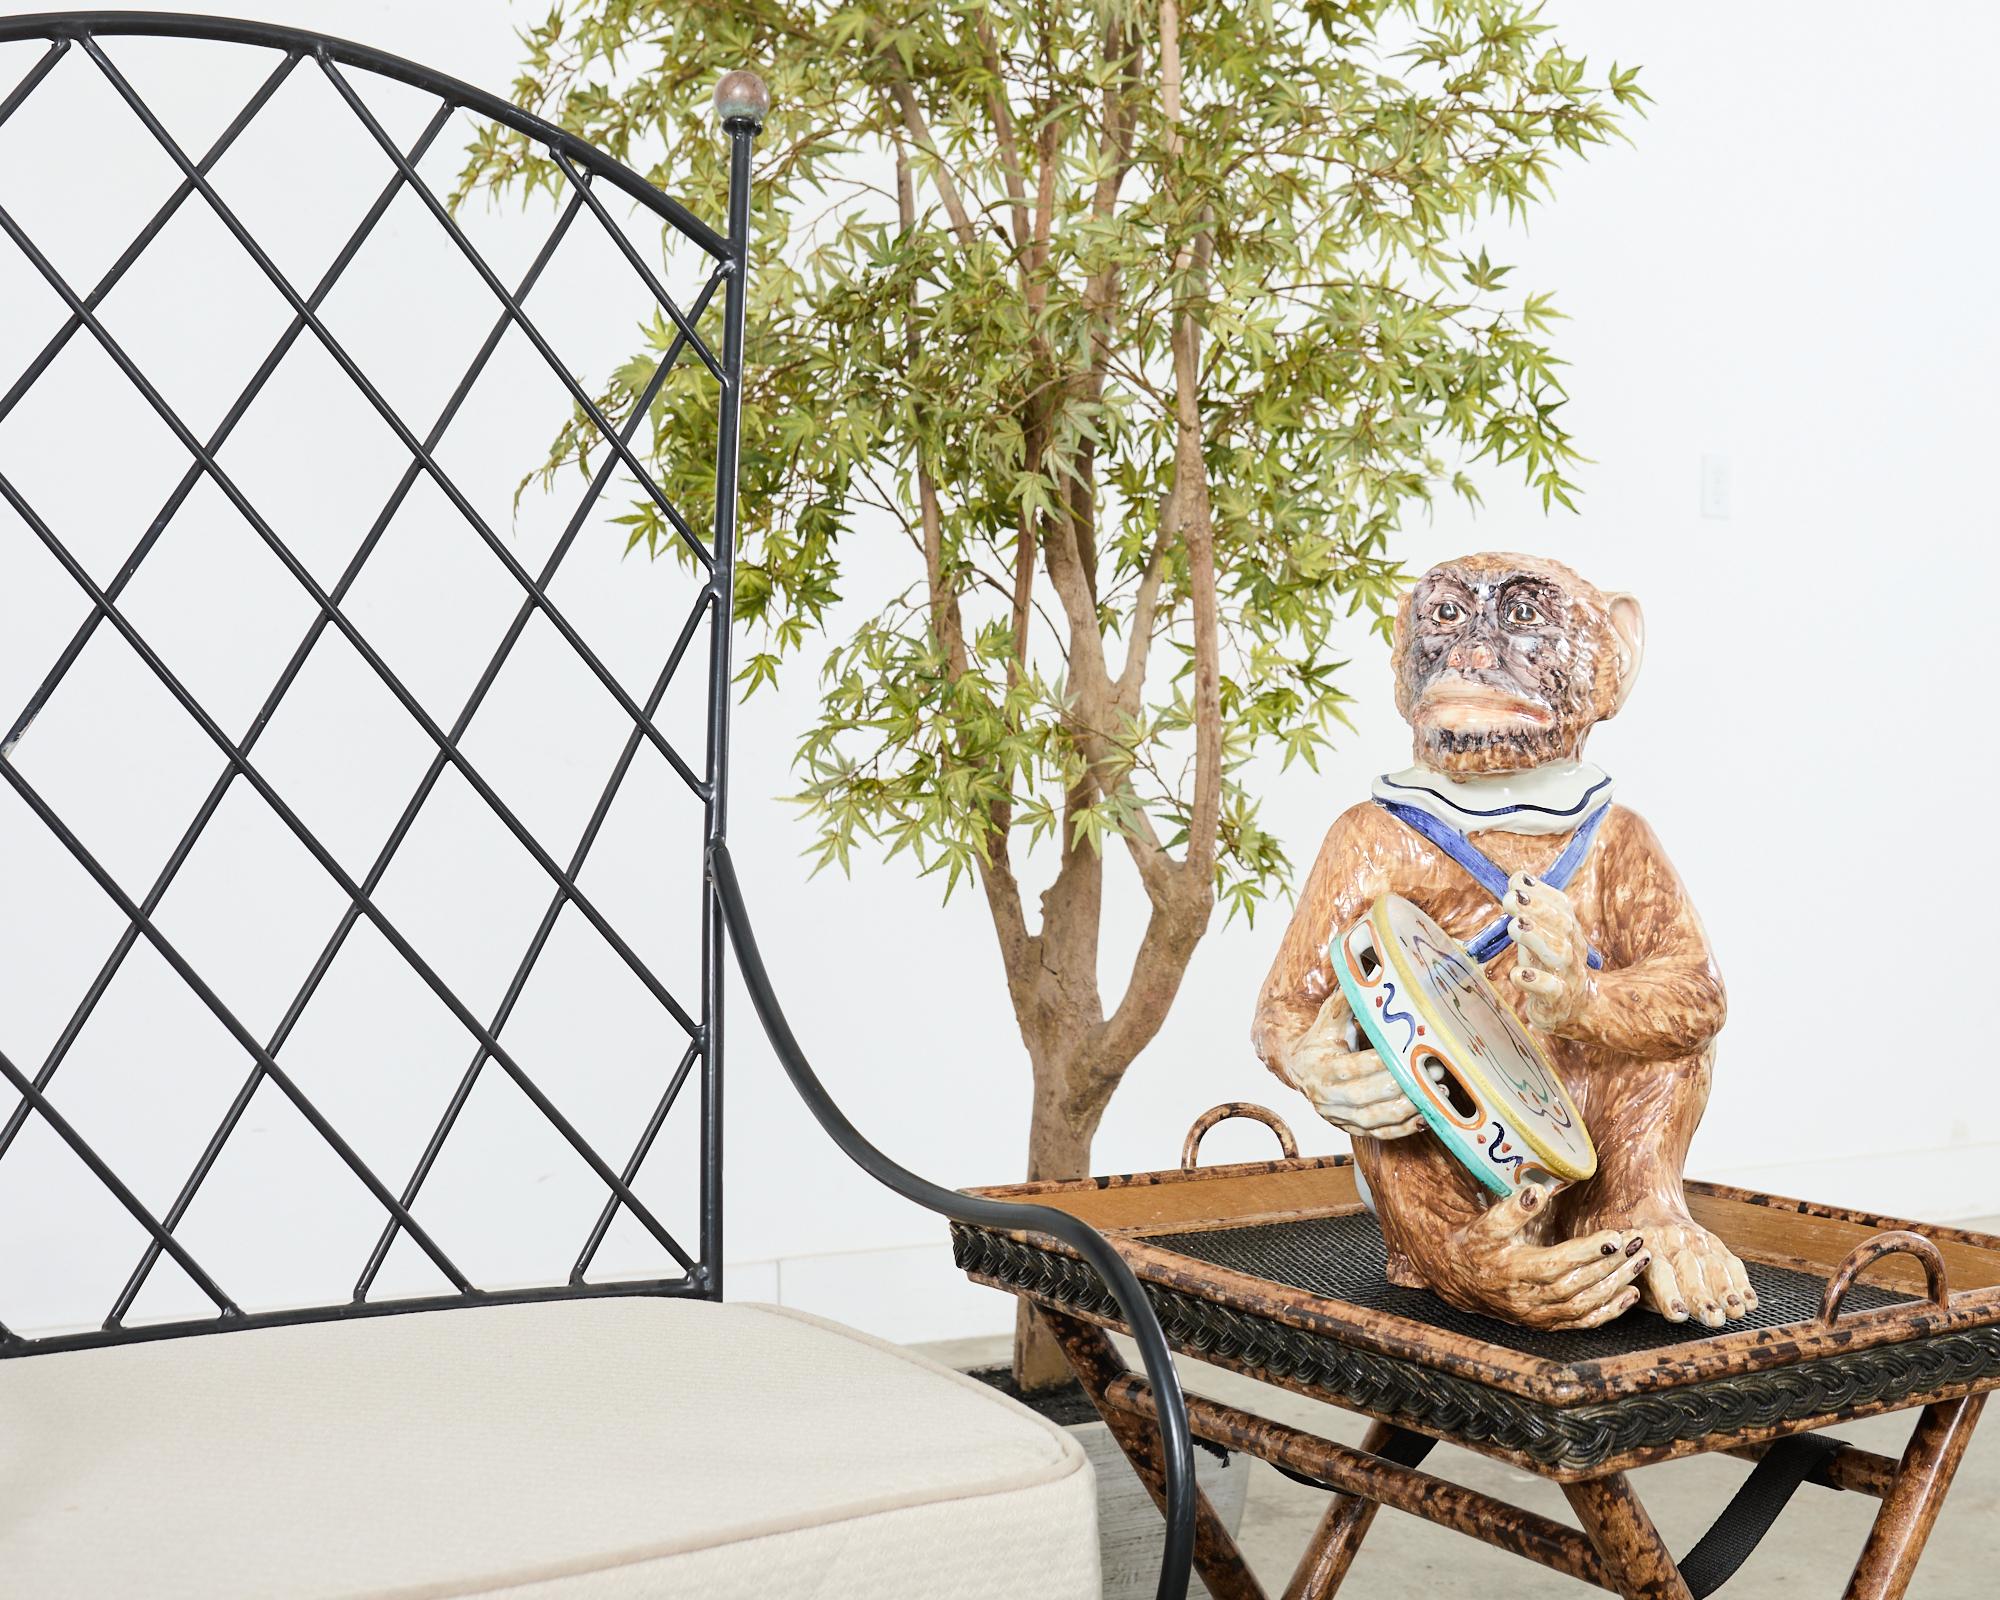 Skurrile französische Majolika-Keramikskulptur eines Tamburin spielenden Geldes, handbemalt. Die große Skulptur ist wunderschön detailliert mit hellen, lebendigen Farben in einer sitzenden Position abgebildet. Die Skulptur ist 18 Zoll hoch und hat